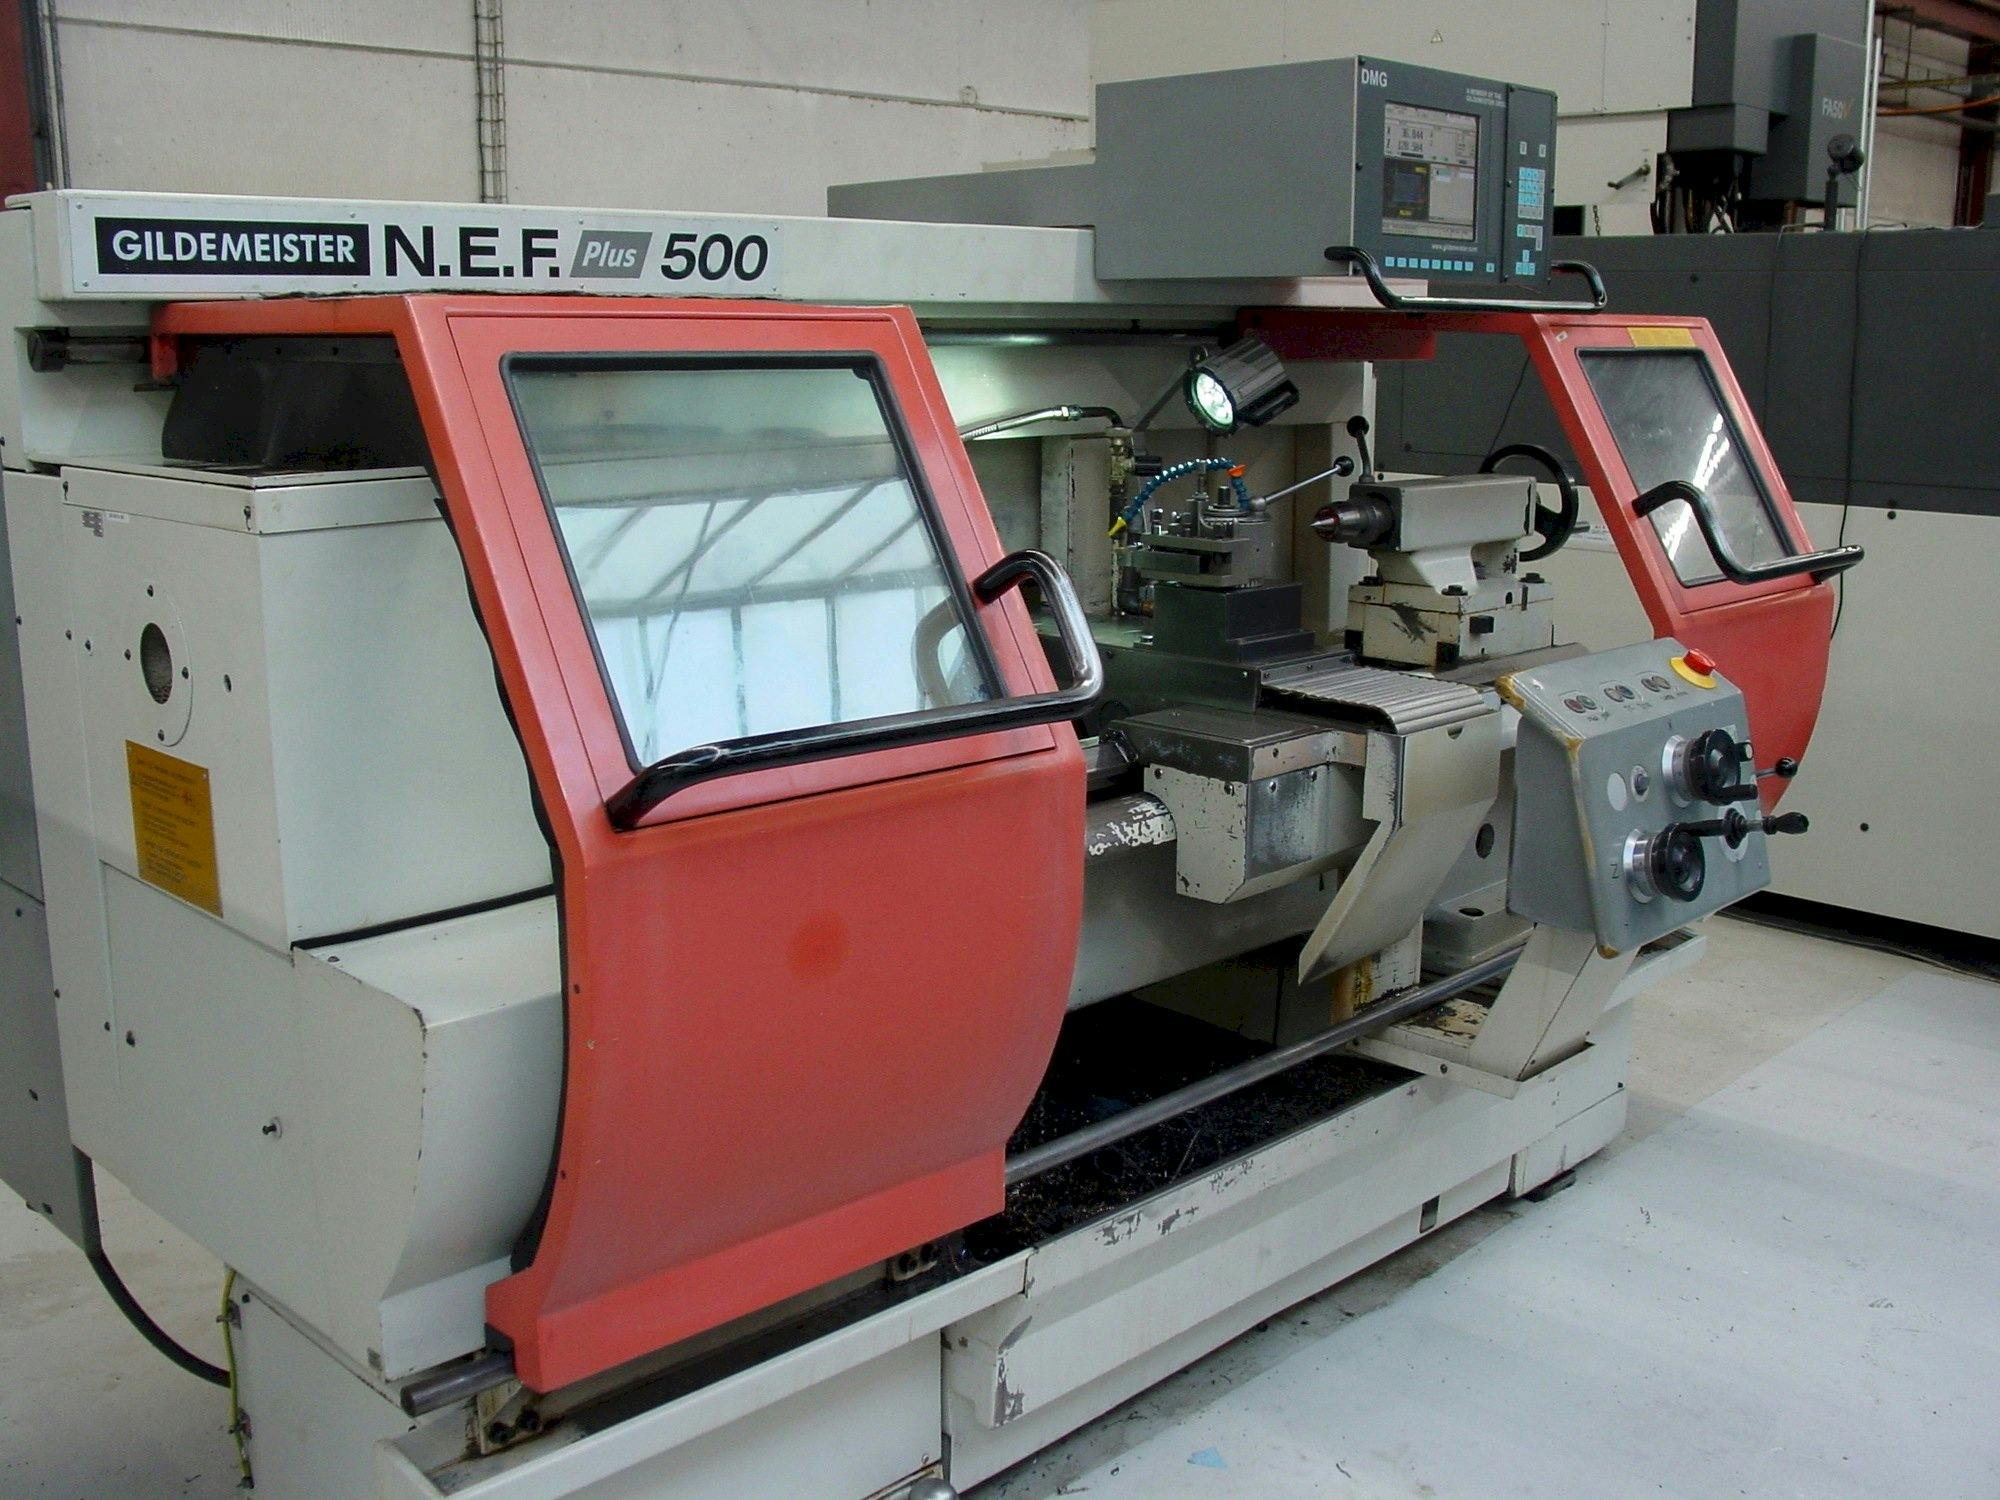 Widok z przodu maszyny Gildemeister NEF Plus 500